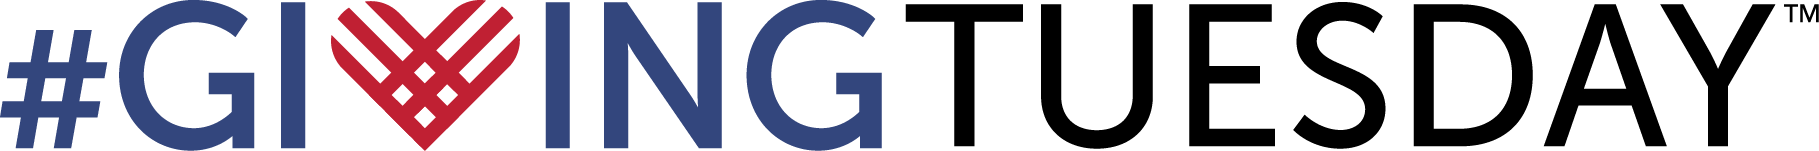 GT logo2013 final1